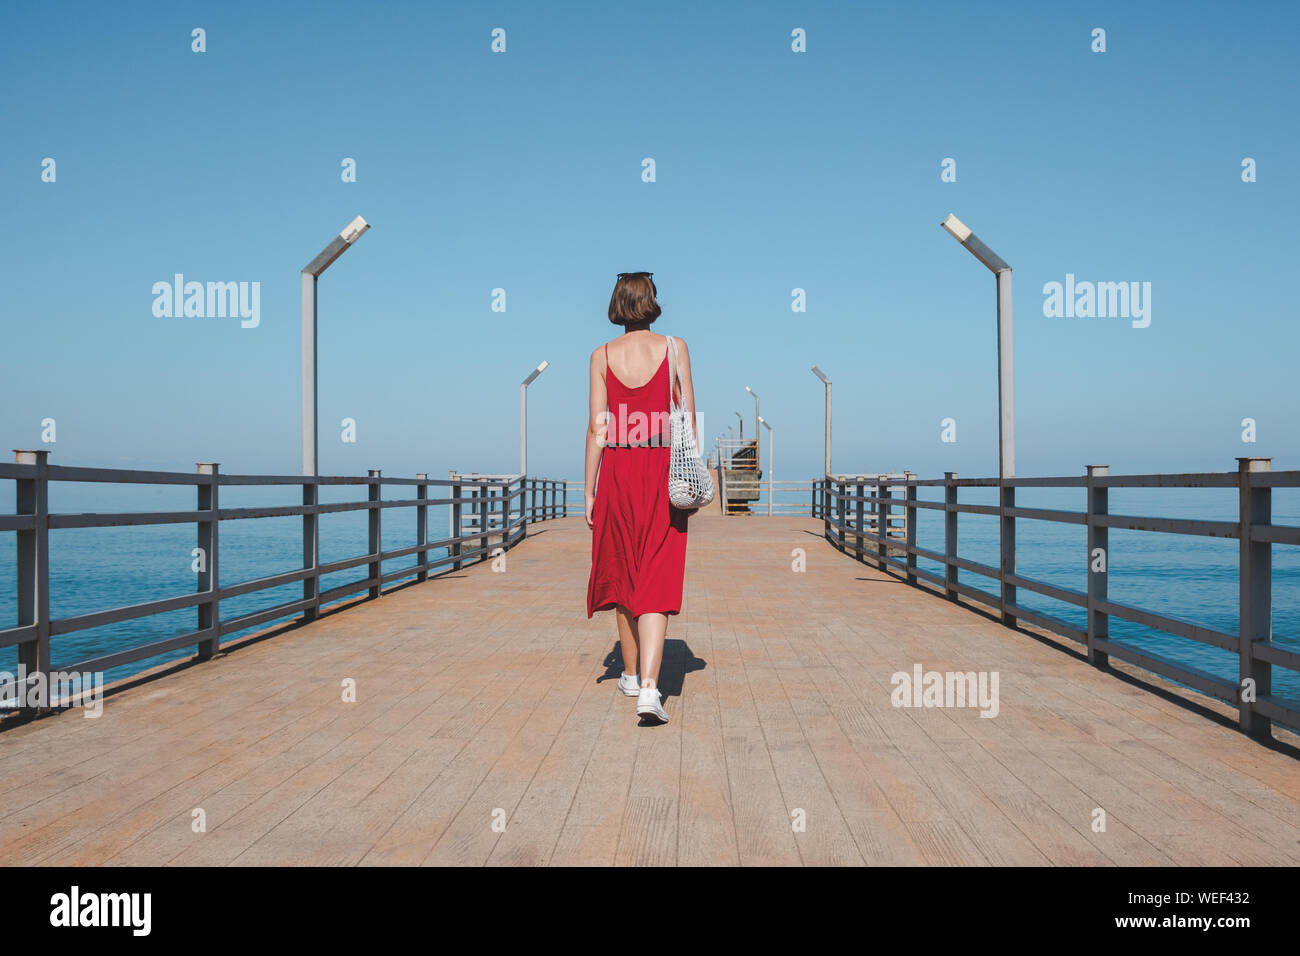 Wandern entlang der Pier mit dem blauen Meer. Die Frau im roten Kleid geht entlang der Kais. Schuß von hinten Stockfoto